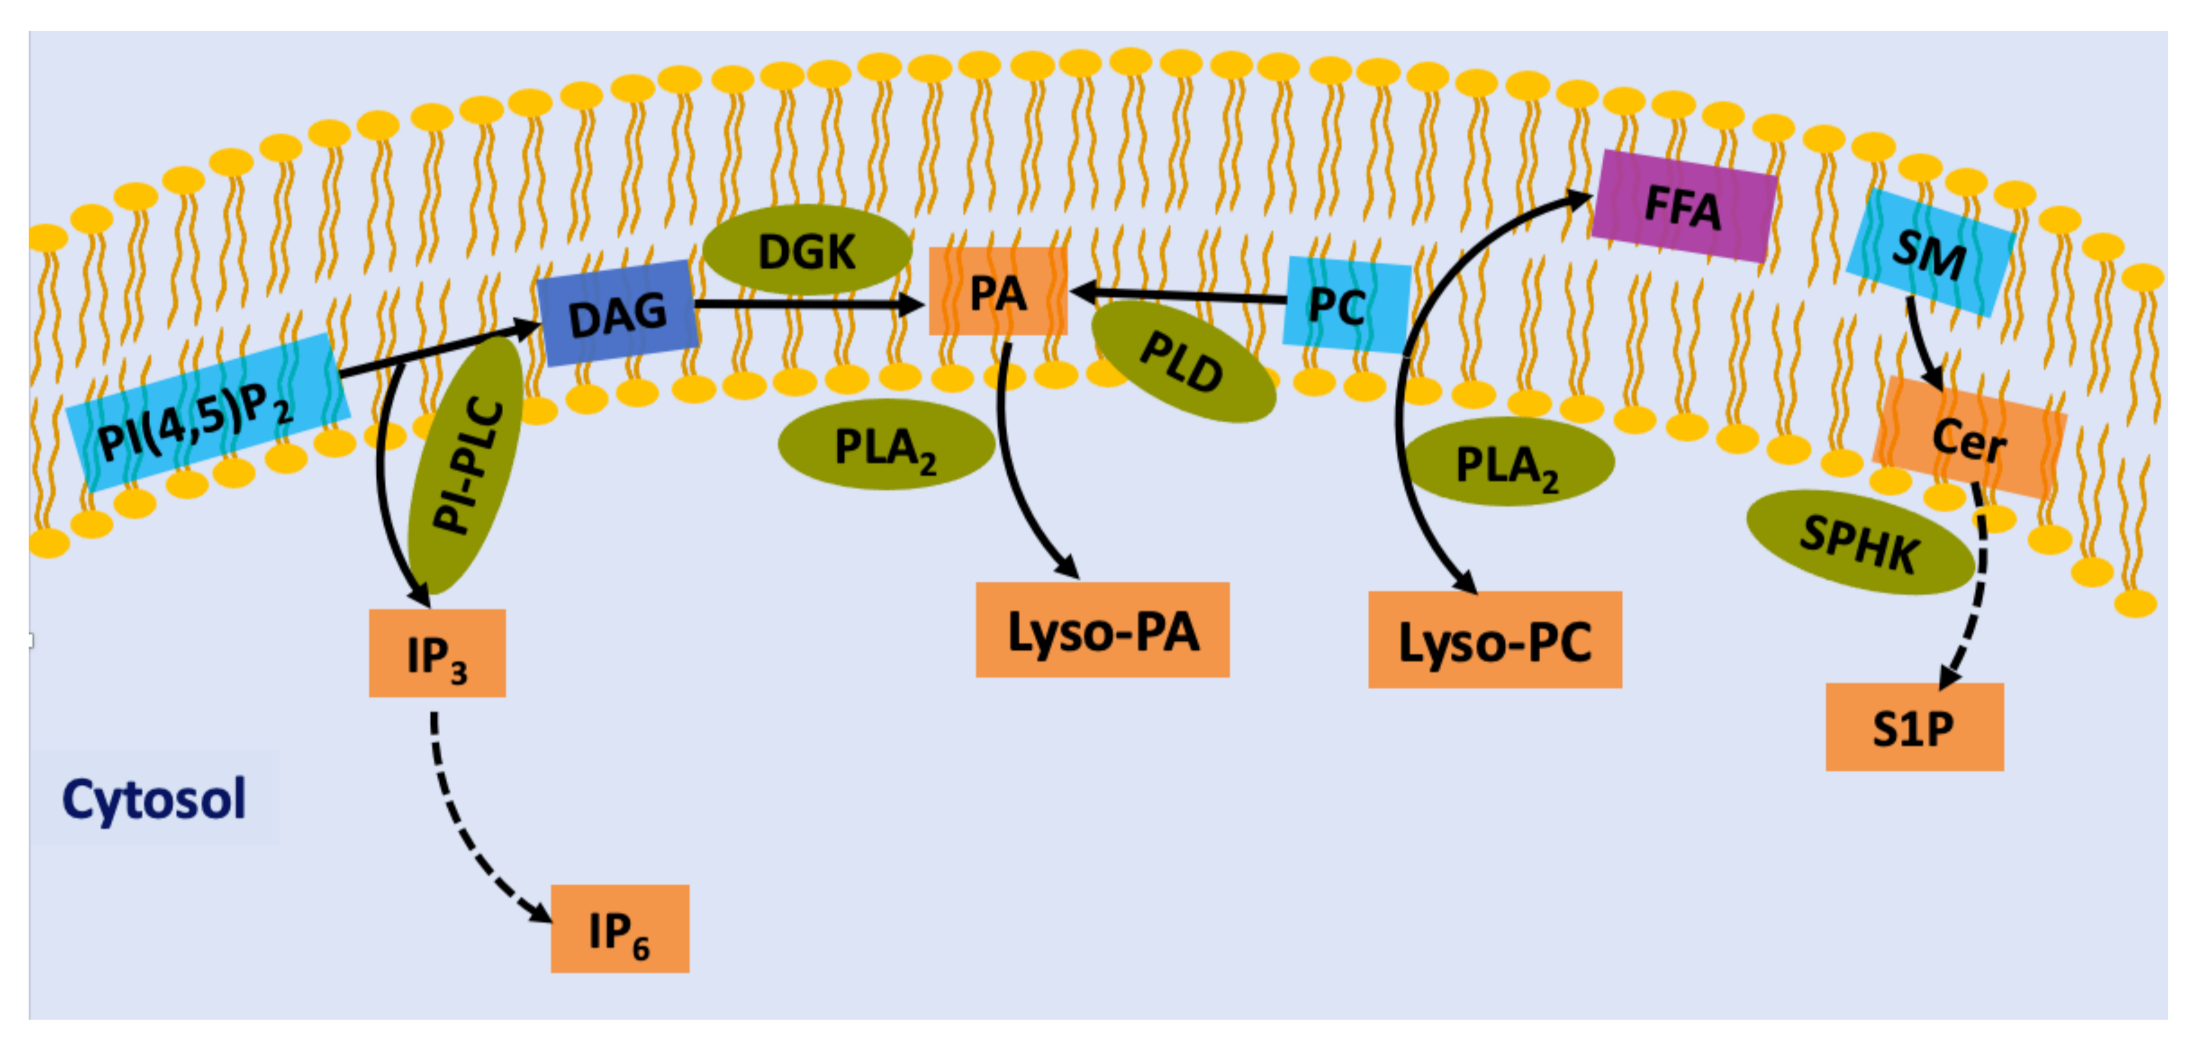 Lipid signaling là một lĩnh vực nghiên cứu mới cung cấp thông tin về những tác dụng của lipid trong quá trình tương tác của các tế bào trong cơ thể. Nó liên quan đến sự phát triển và điều chỉnh của tế bào và cơ quan dẫn đến những ứng dụng y tế tiềm năng. Hãy xem ngay hình ảnh liên quan để tìm hiểu thêm về lipid signaling.